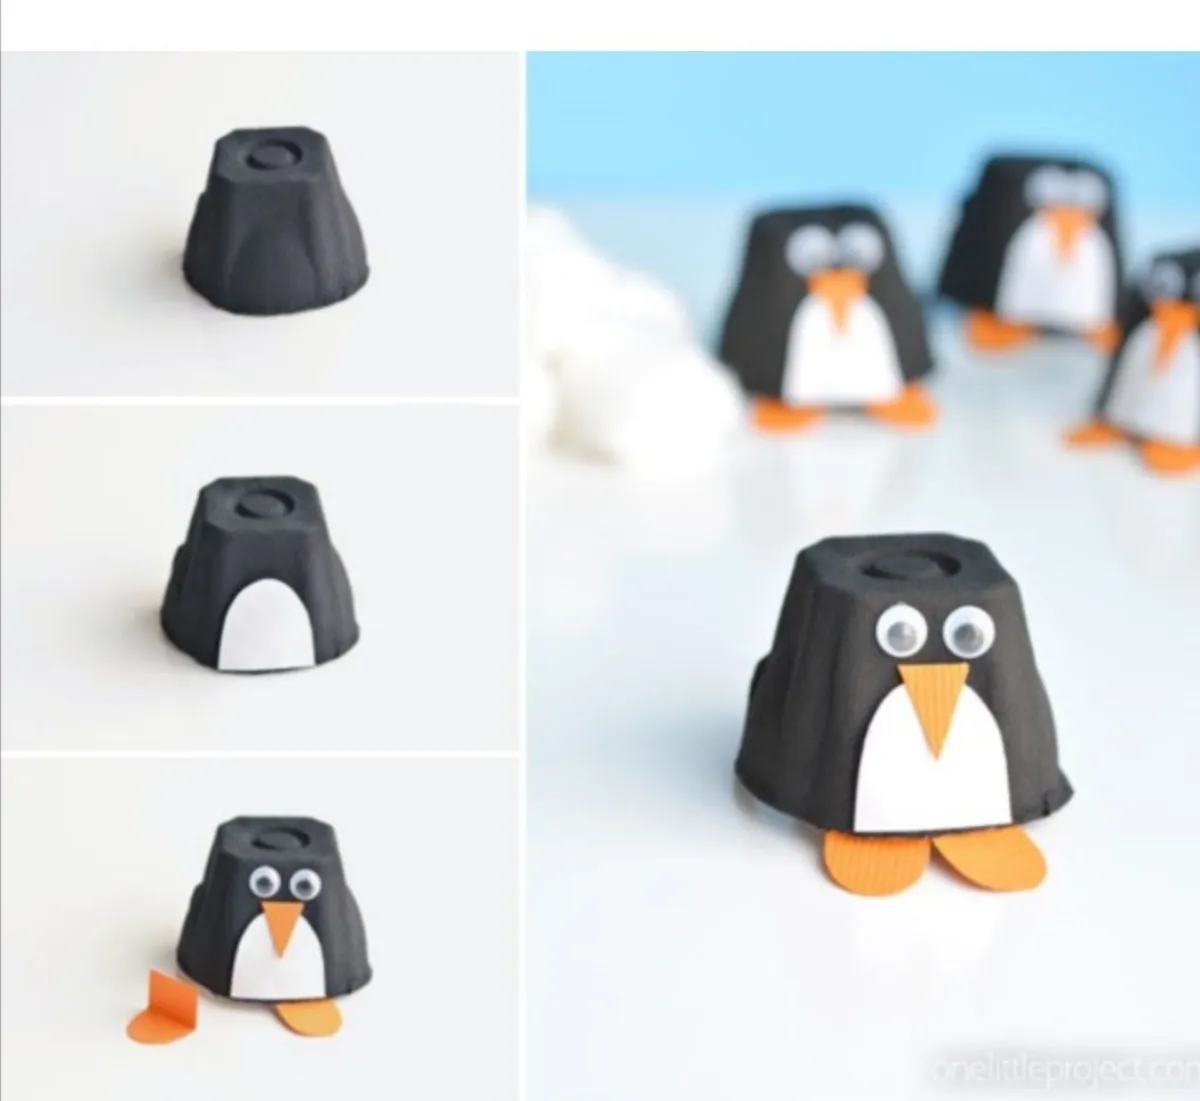 basteln im winter mit kindern lustige pinguine selber machen aus eierkarton